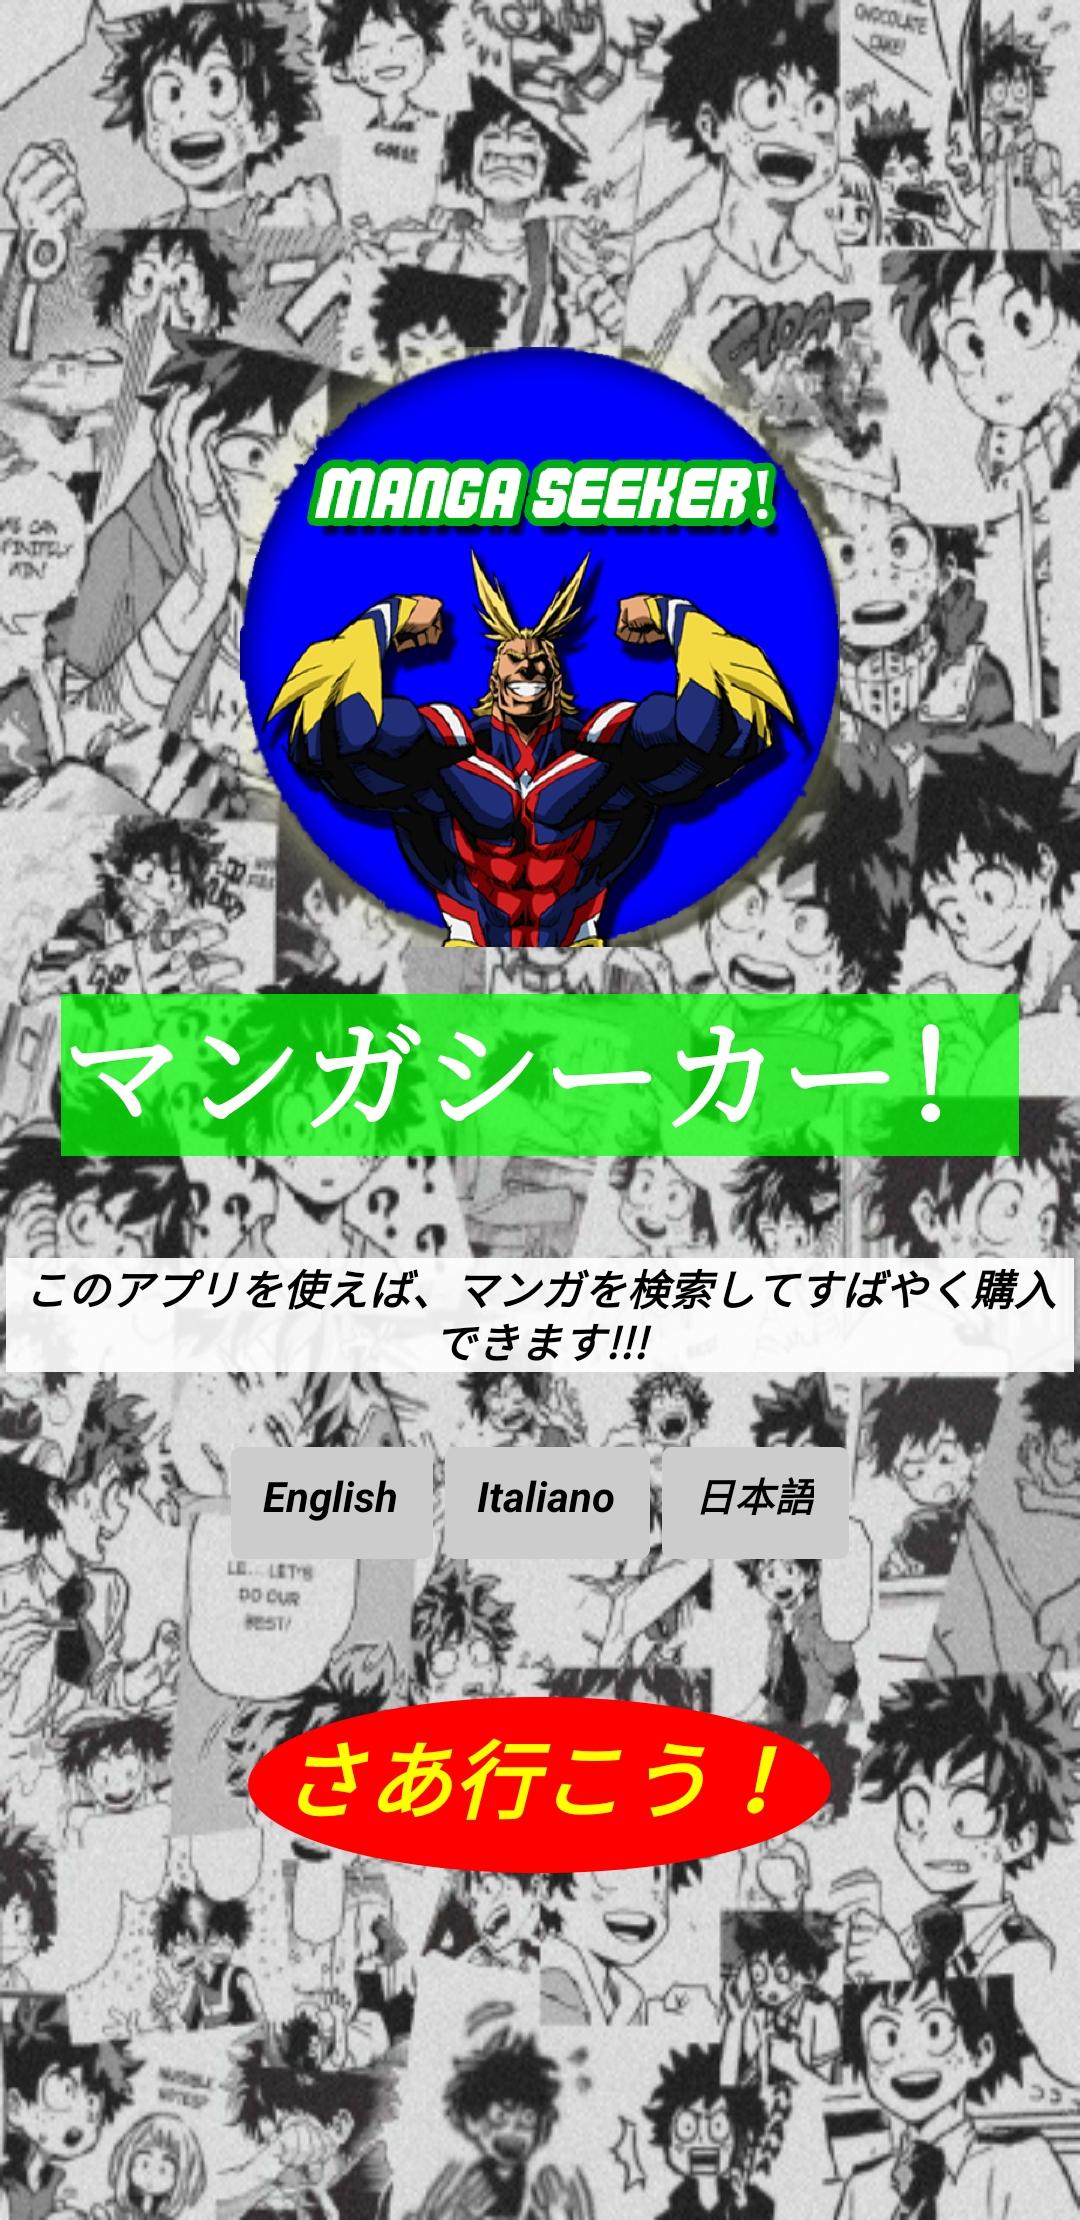 Manga Seeker! 1.1 Screenshot 9